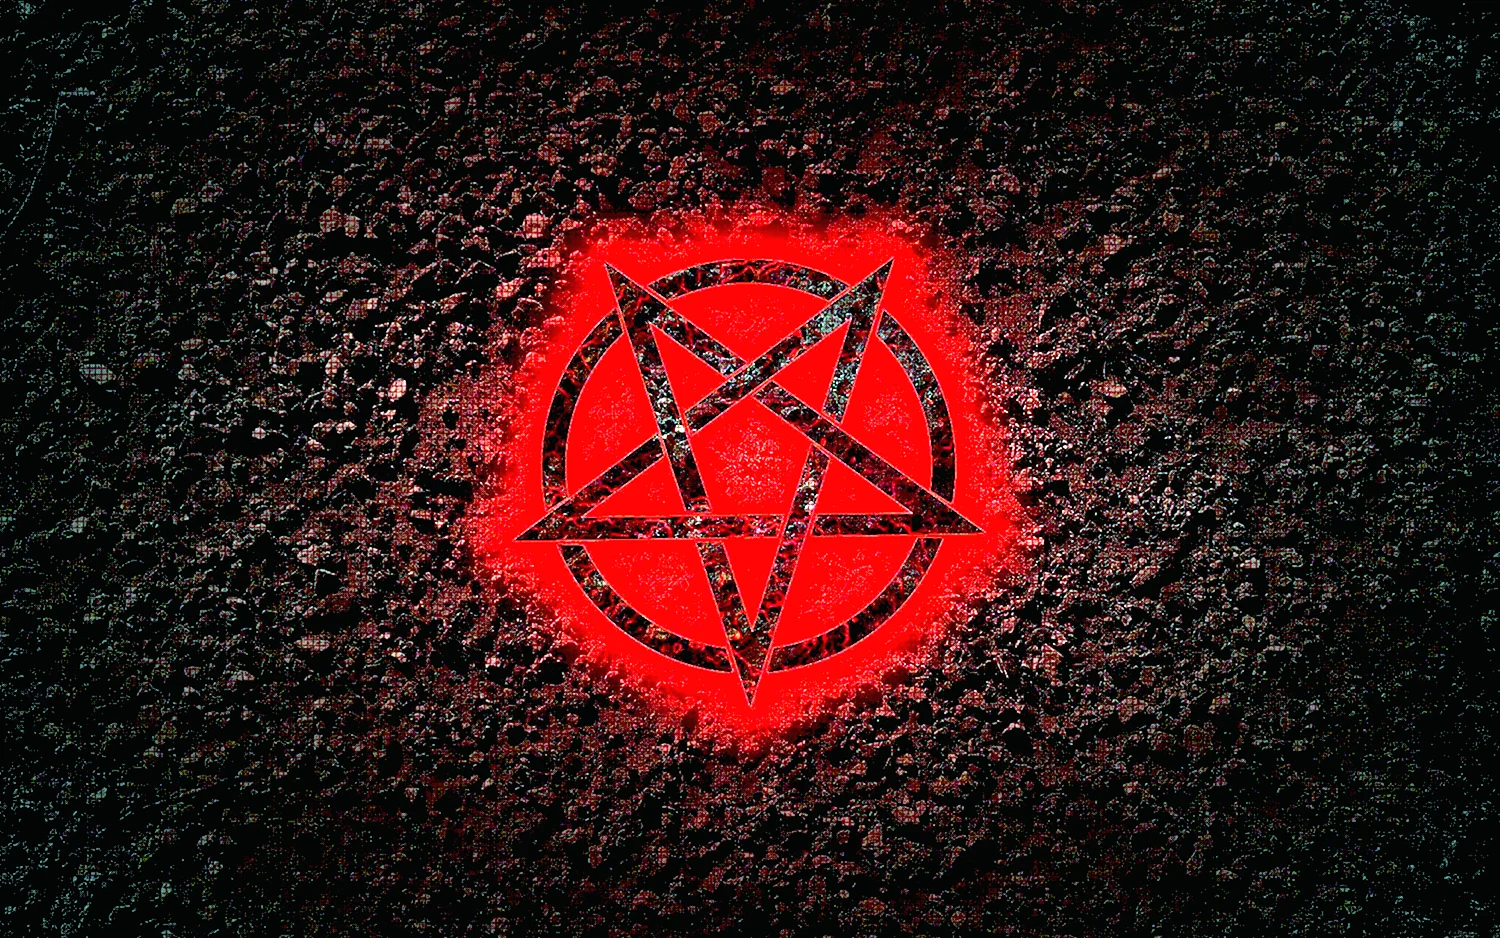 Сатана пентаграмма 666